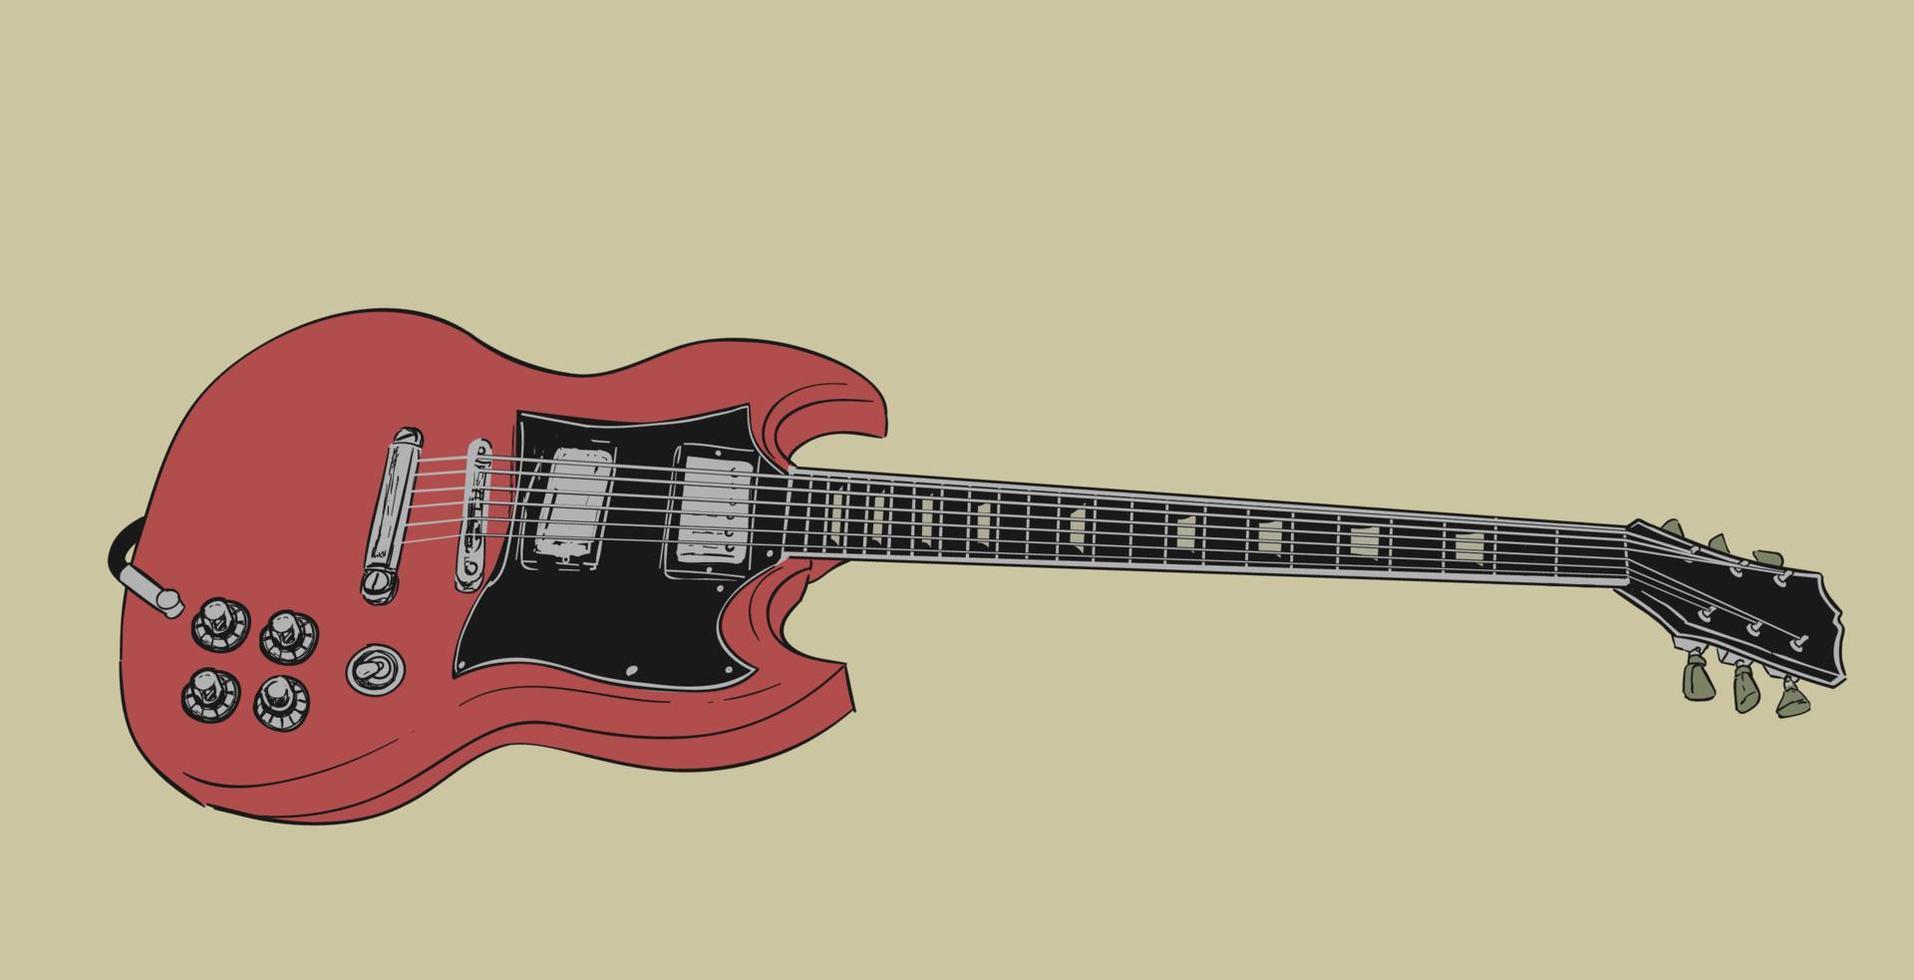 elektrisch gitaar illustratie vector